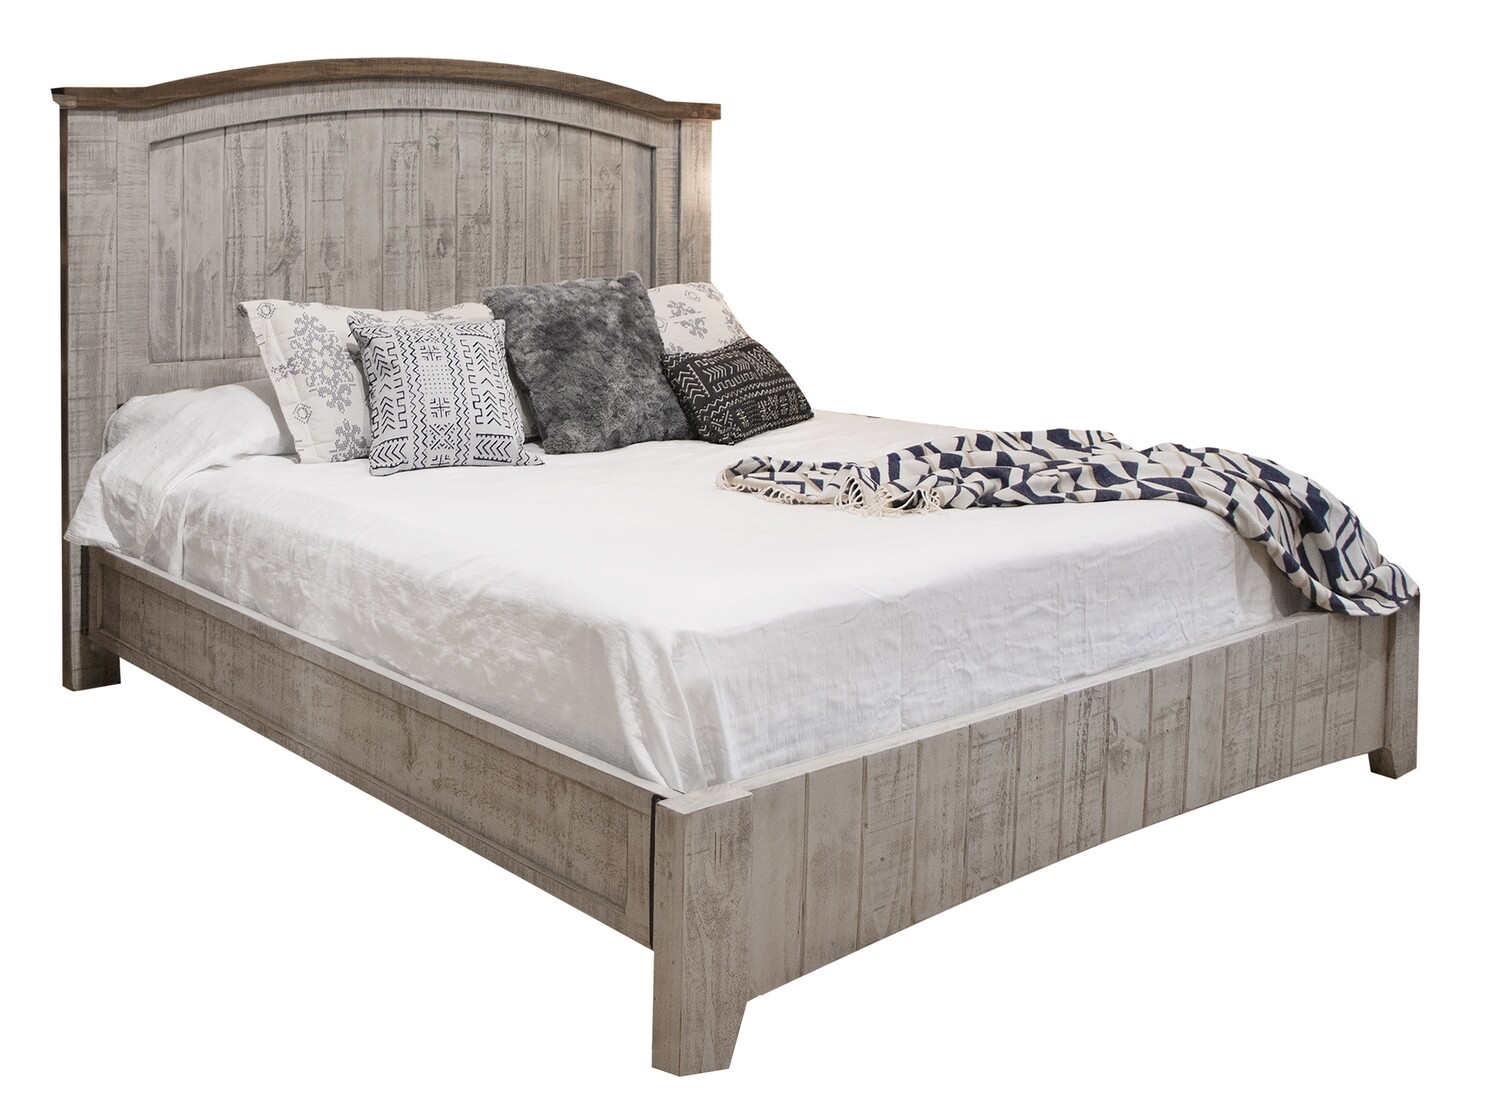 Pueblo Gray King Size Bed